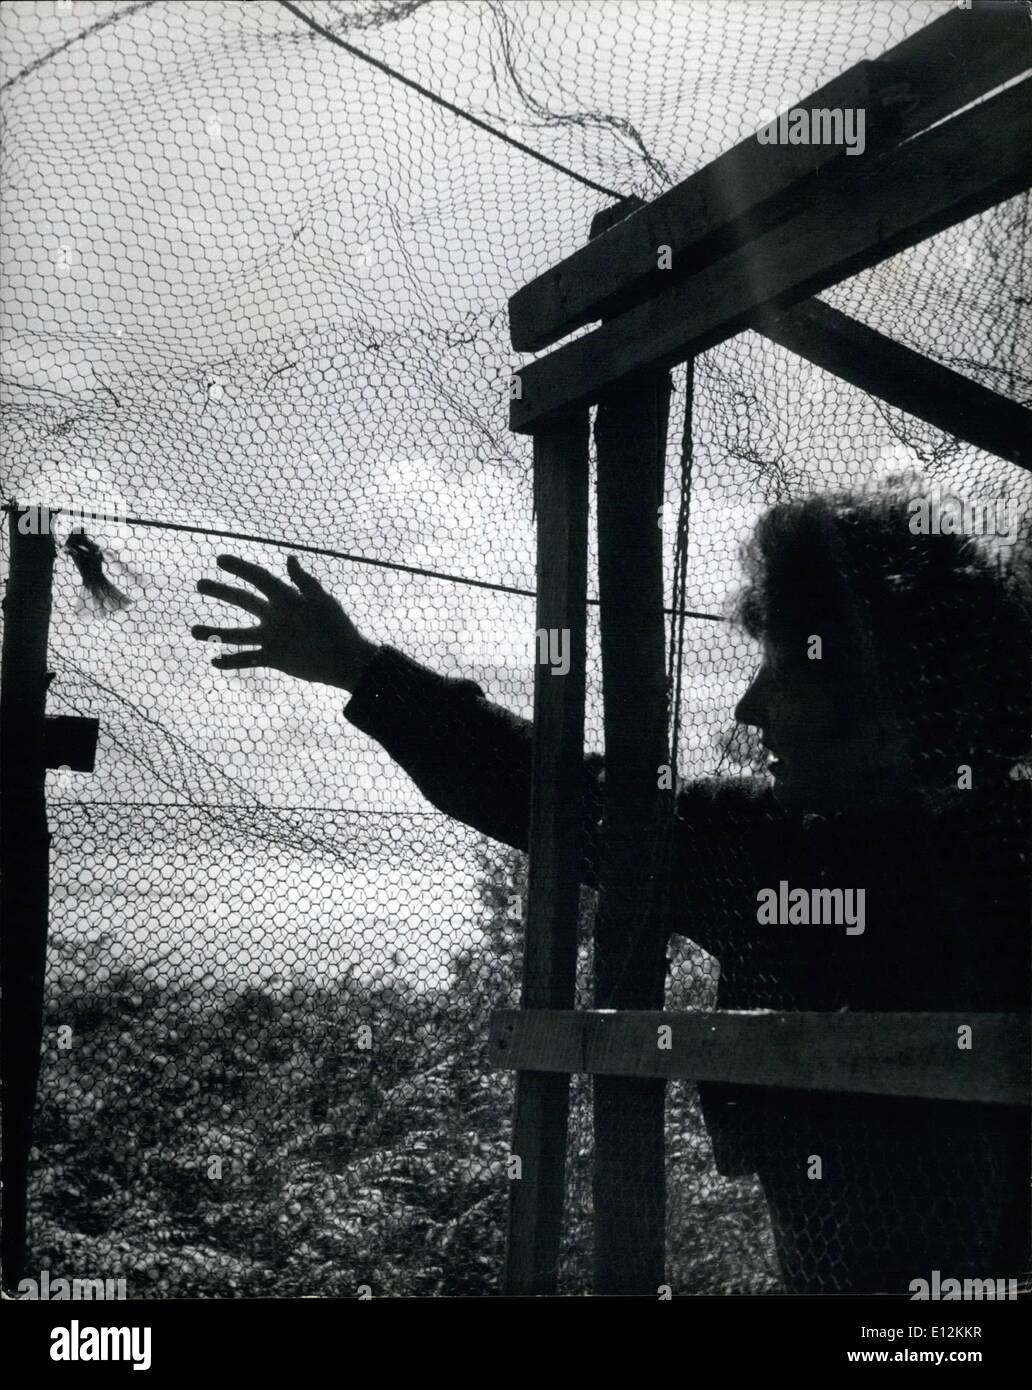 24 février 2012 - Préfet de Lundy Island : Barbara Whitaker trouve une prise dans son piège Helgoland pendant sa visite du matin de l'île. C'est un saule orangée et elle est sur le point de la retrouver dans le mesh. Banque D'Images